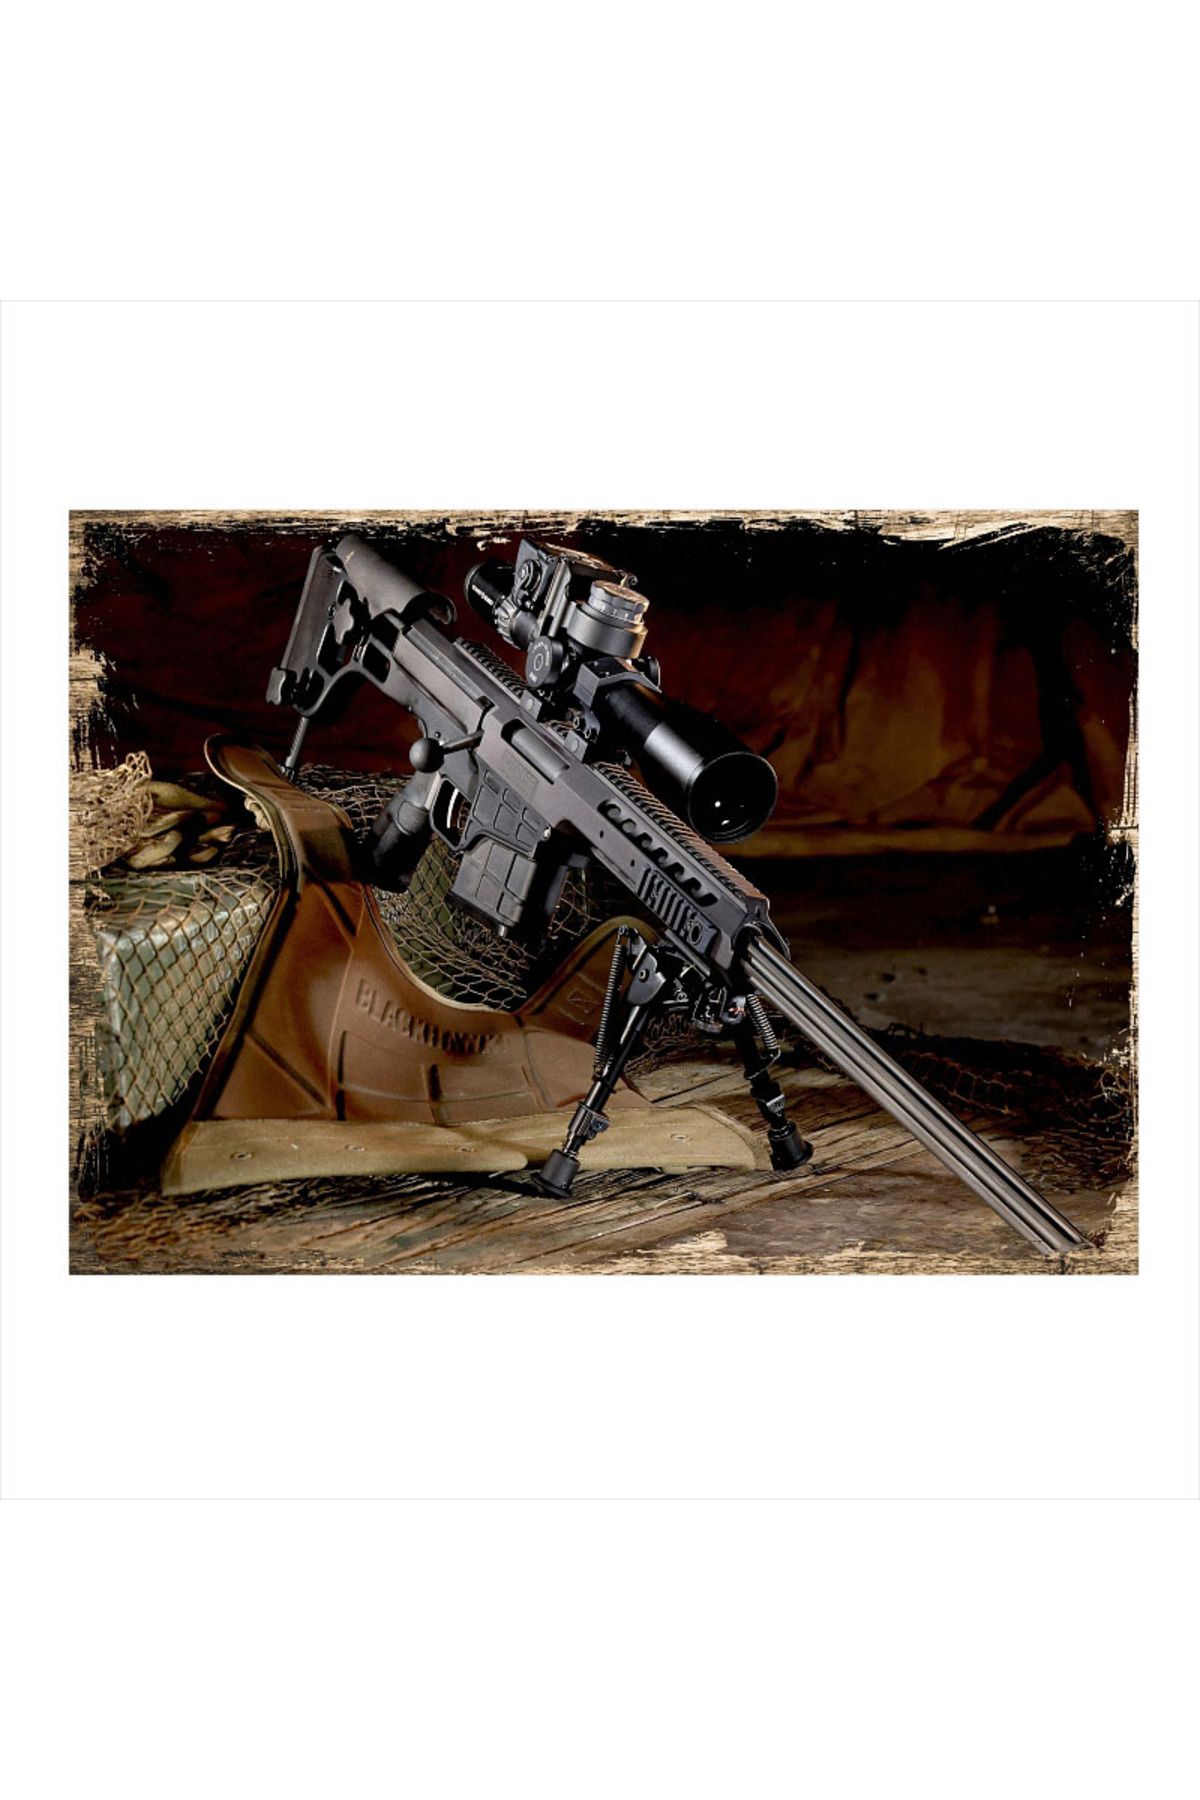 Tablomega Sniper Askeri Silah Desenli Mdf Tablo 18cm X 27cm